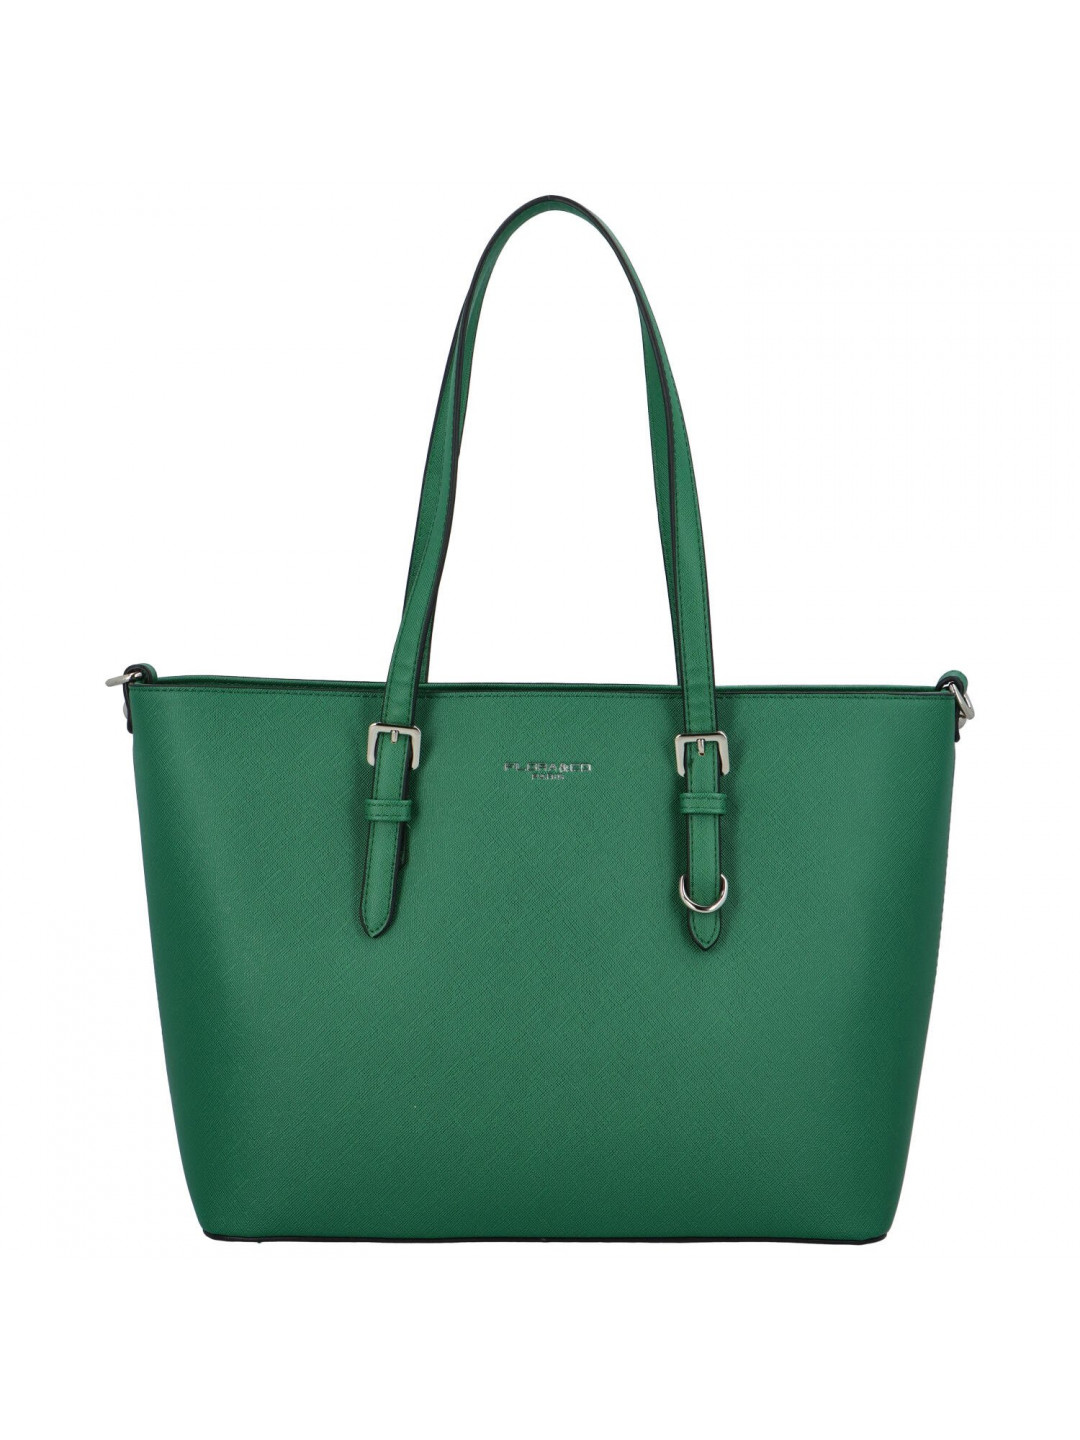 Dámská kabelka přes rameno tmavě zelená – FLORA & CO Dianna